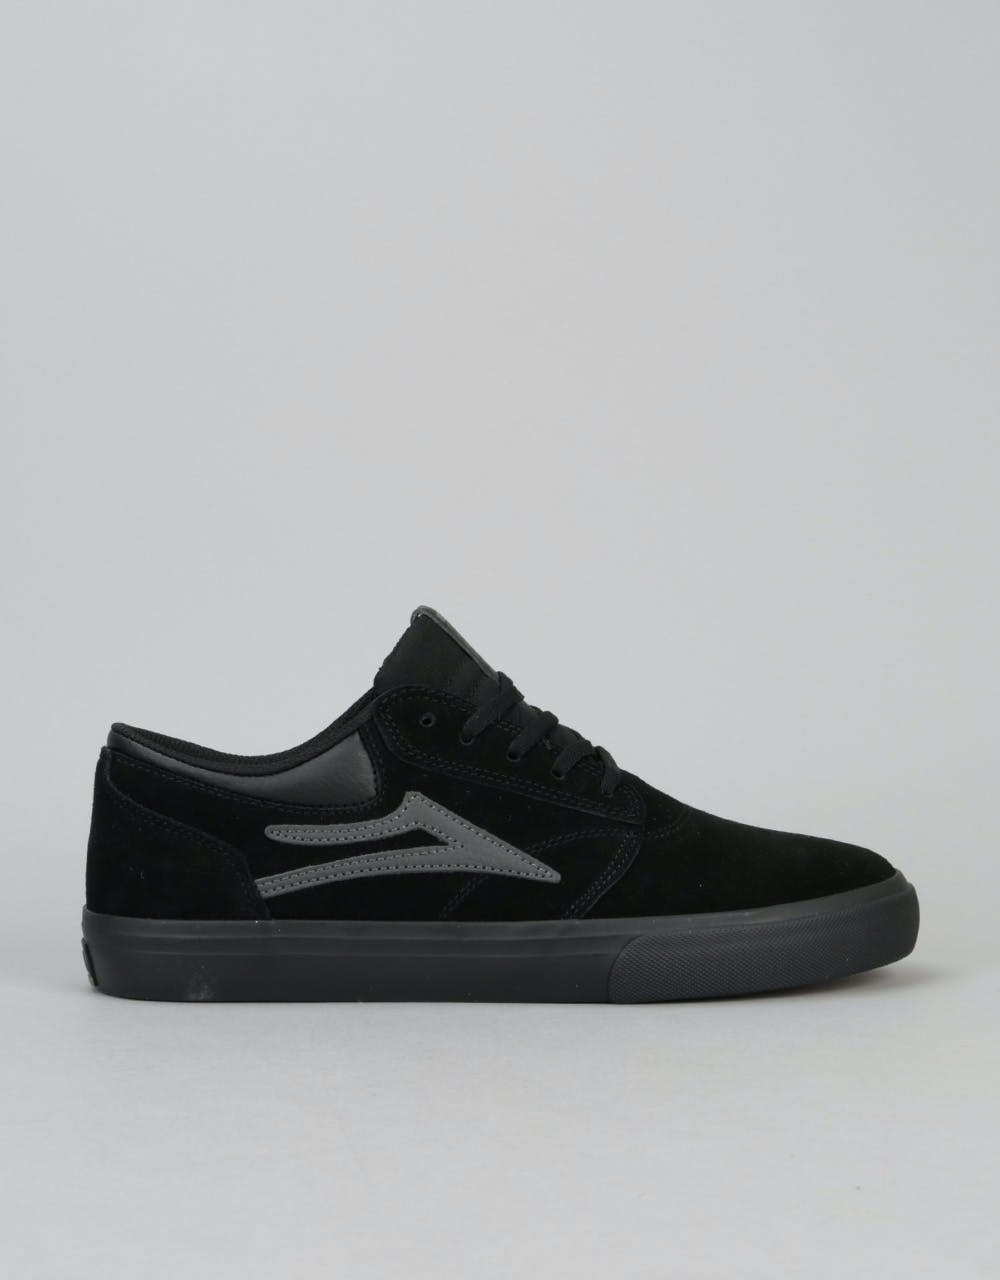 Lakai Griffin Skate Shoes - Black/Black Suede